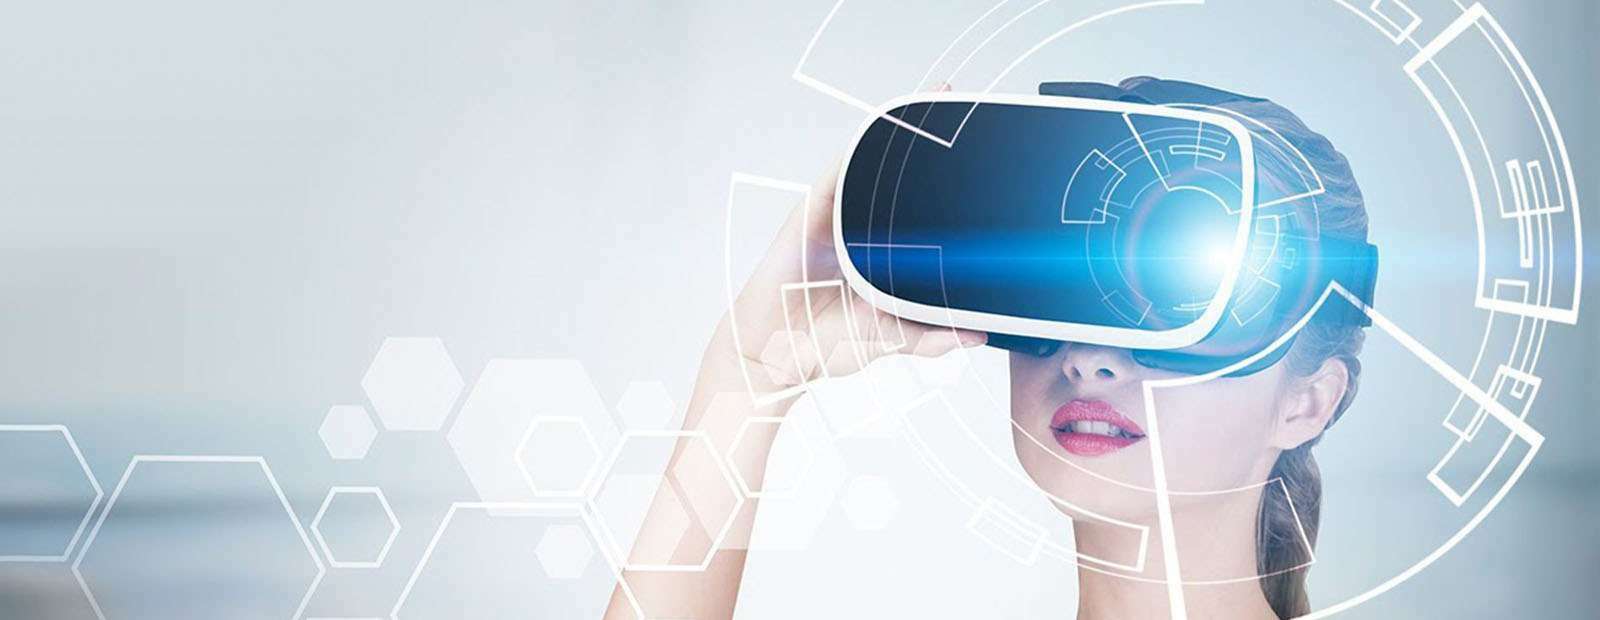 V blízké budoucnosti se očekává oznámení VR a AR headsetů od Applu - icoola.cz - fotografie 1 